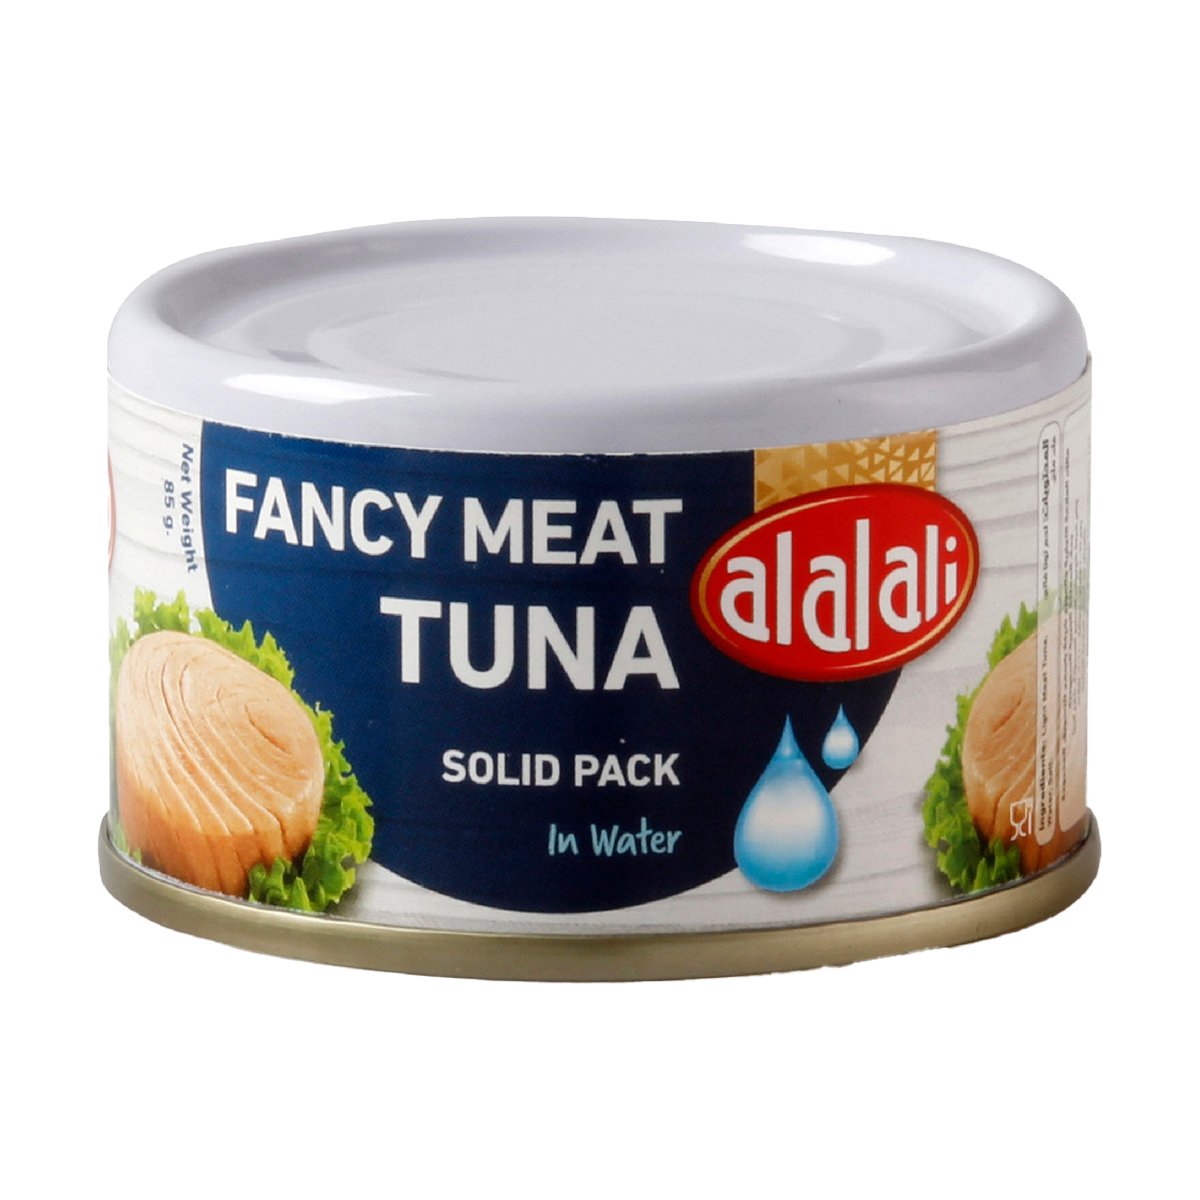 Al Alali Fancy Meat Tuna Solid Pack In Water 85 g